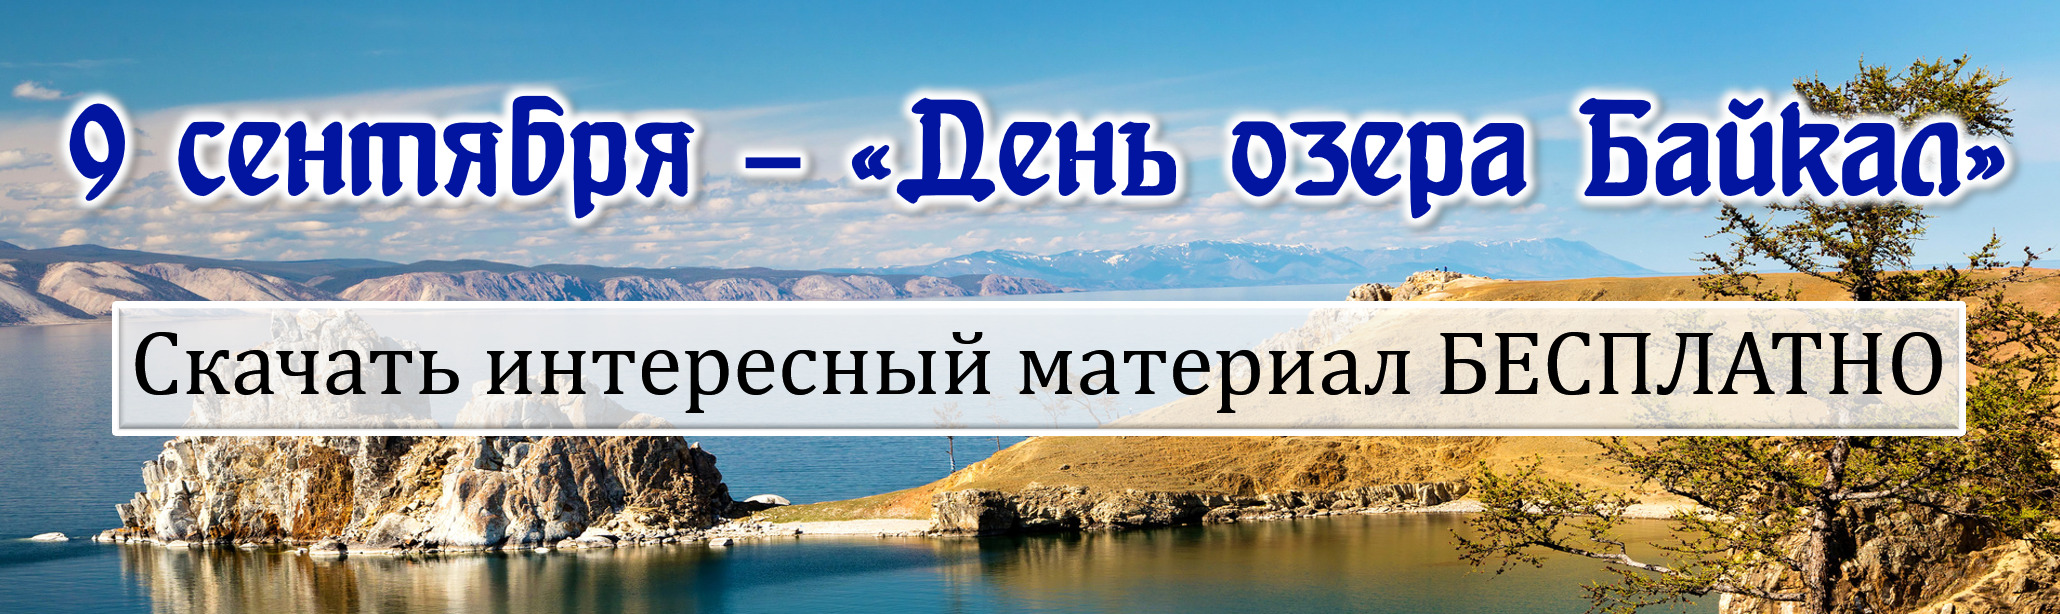 День озера Байкал